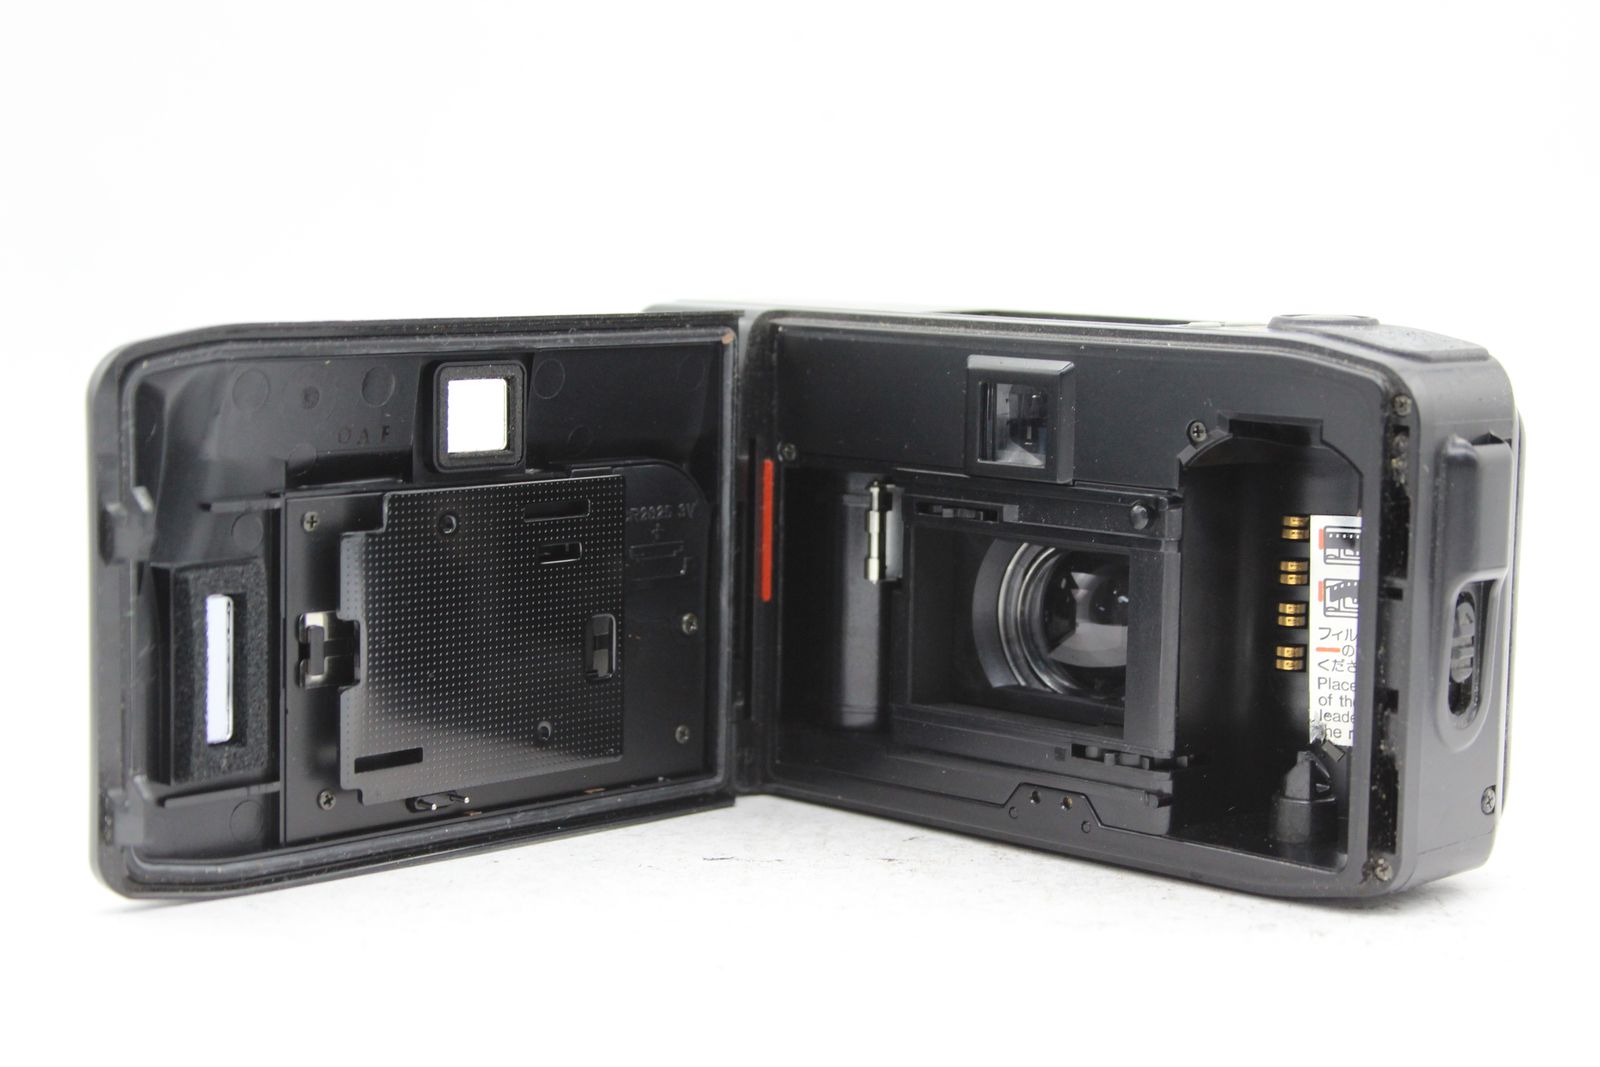 返品保証】 京セラ KYOCERA T SCOPE Carl Zeiss T* Tessar 35mm F2.8 コンパクトカメラ s6318 -  メルカリ